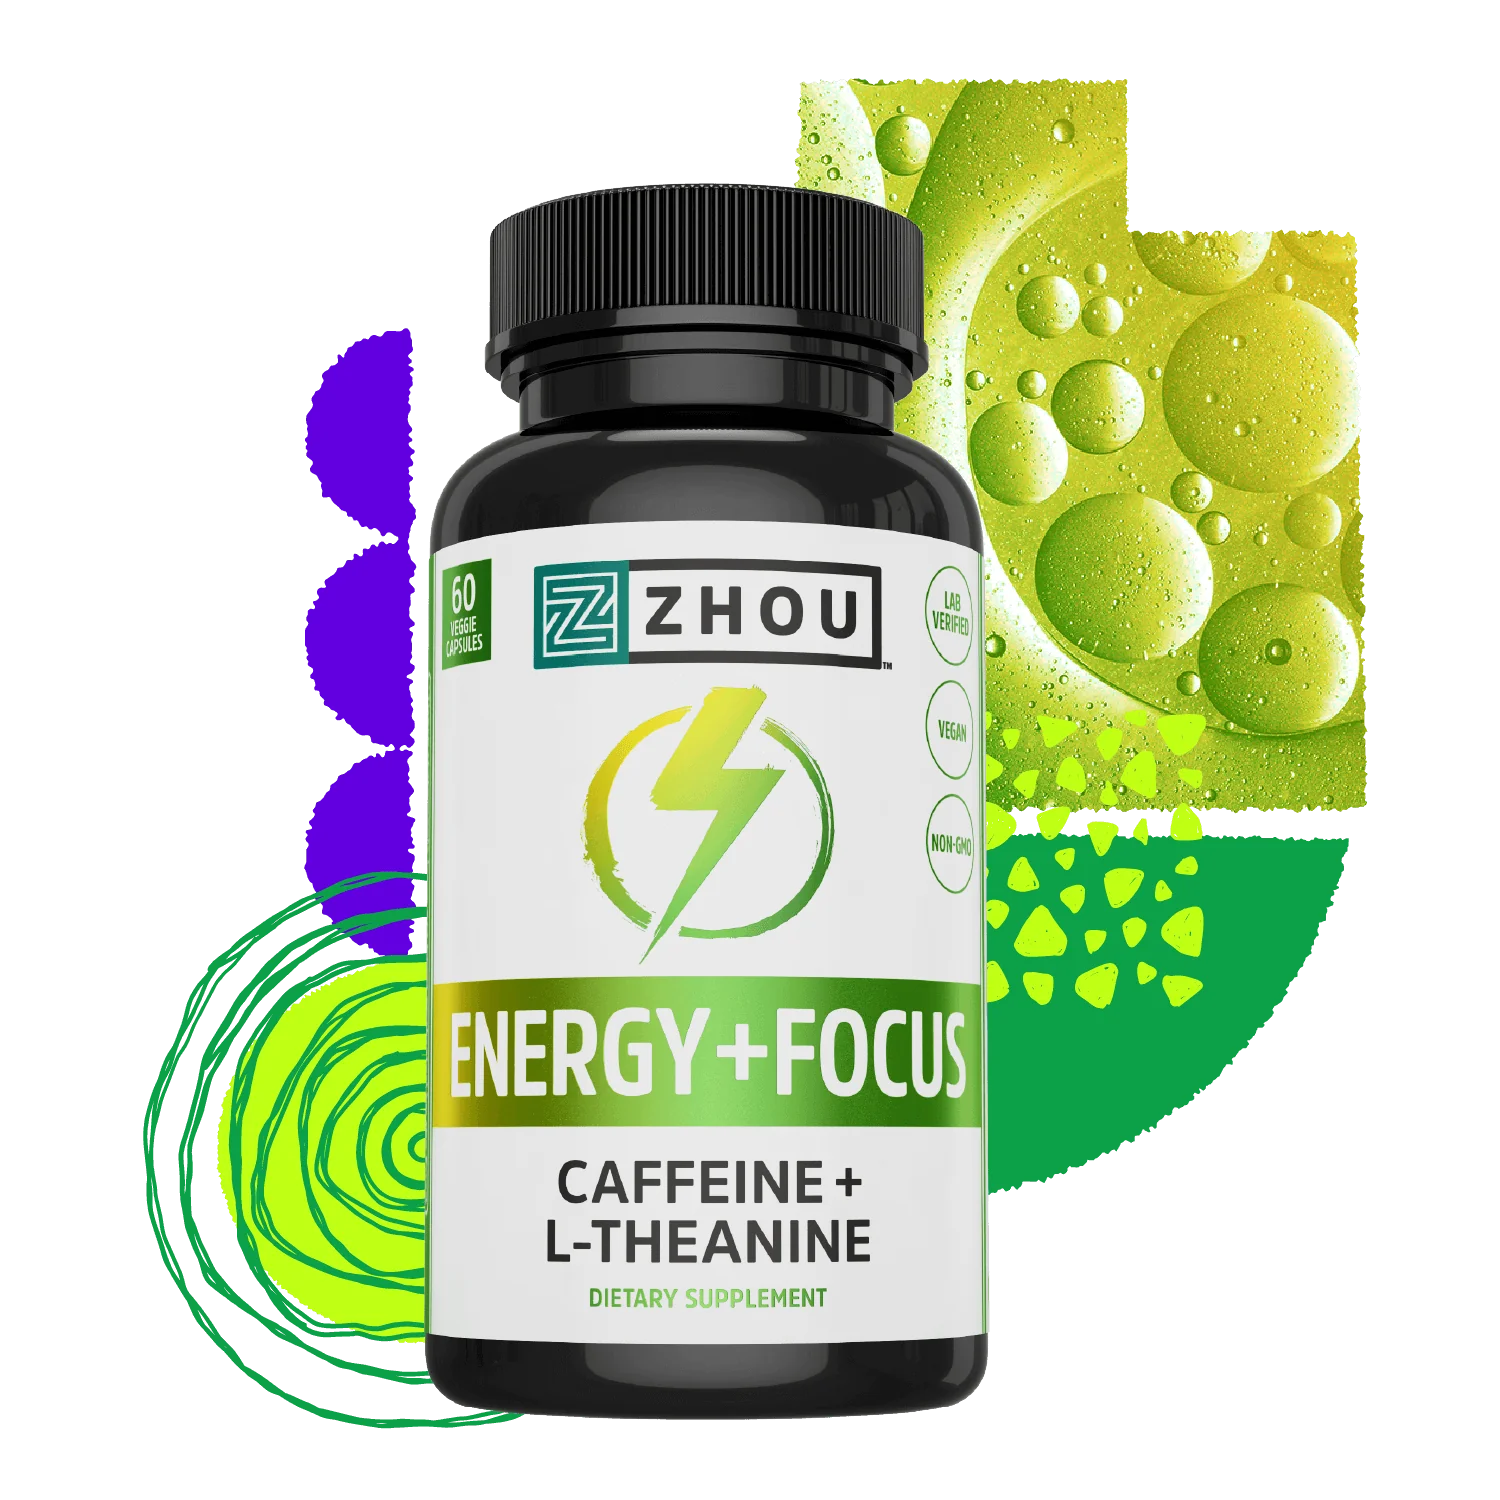 Energy + Focus Caffeine + L-Theanine